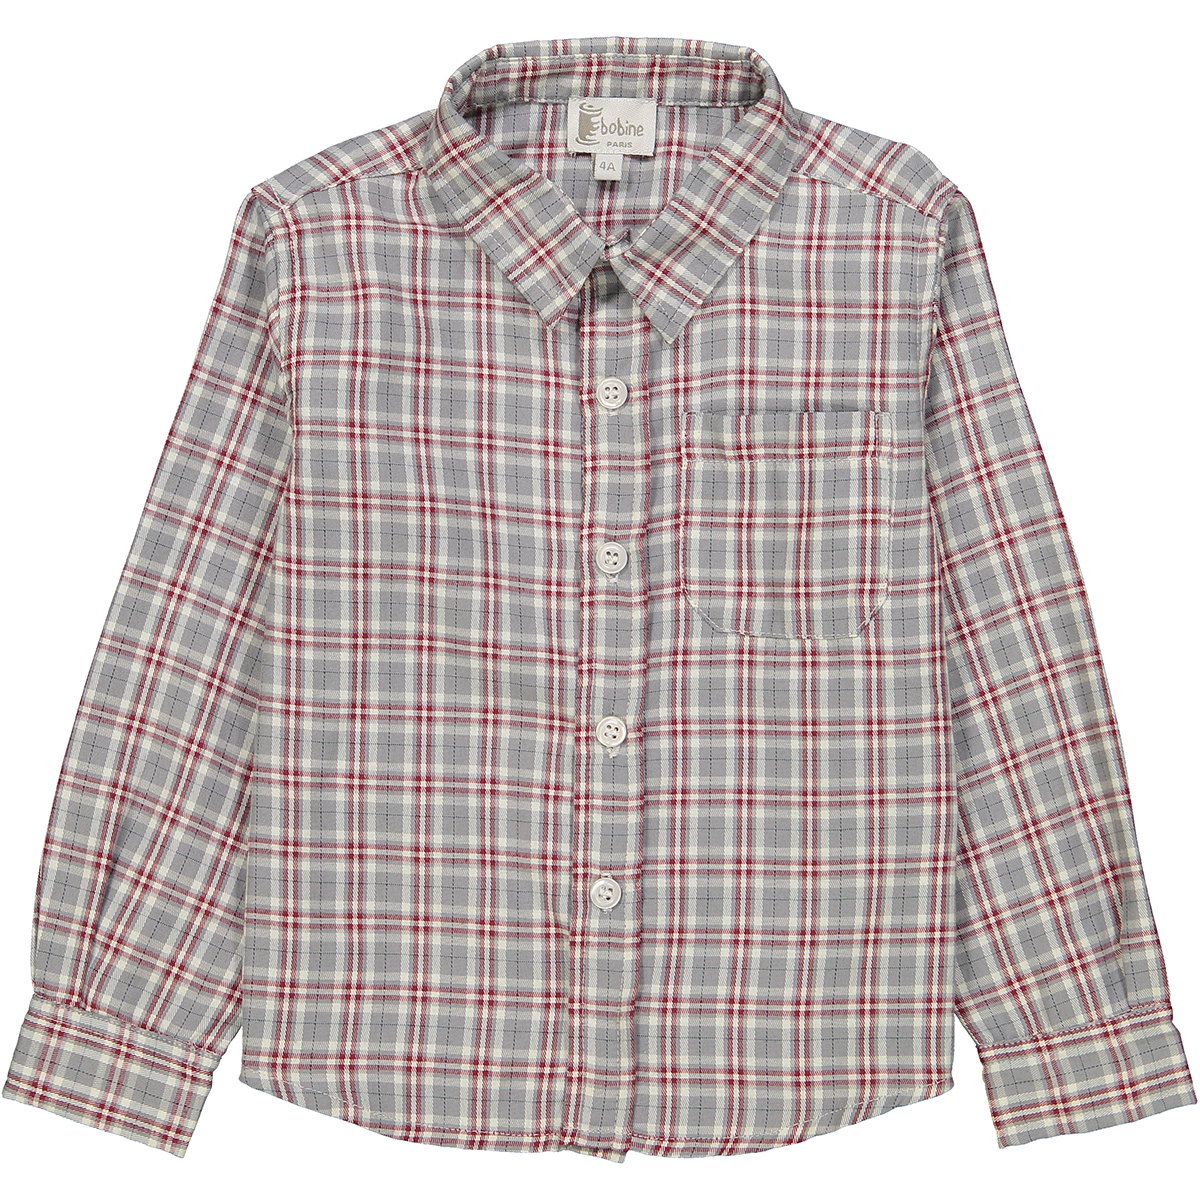 Chemise à col pointu à carreaux gris et rouges <br>Disponible en 4, 10 et 12 ans<br>